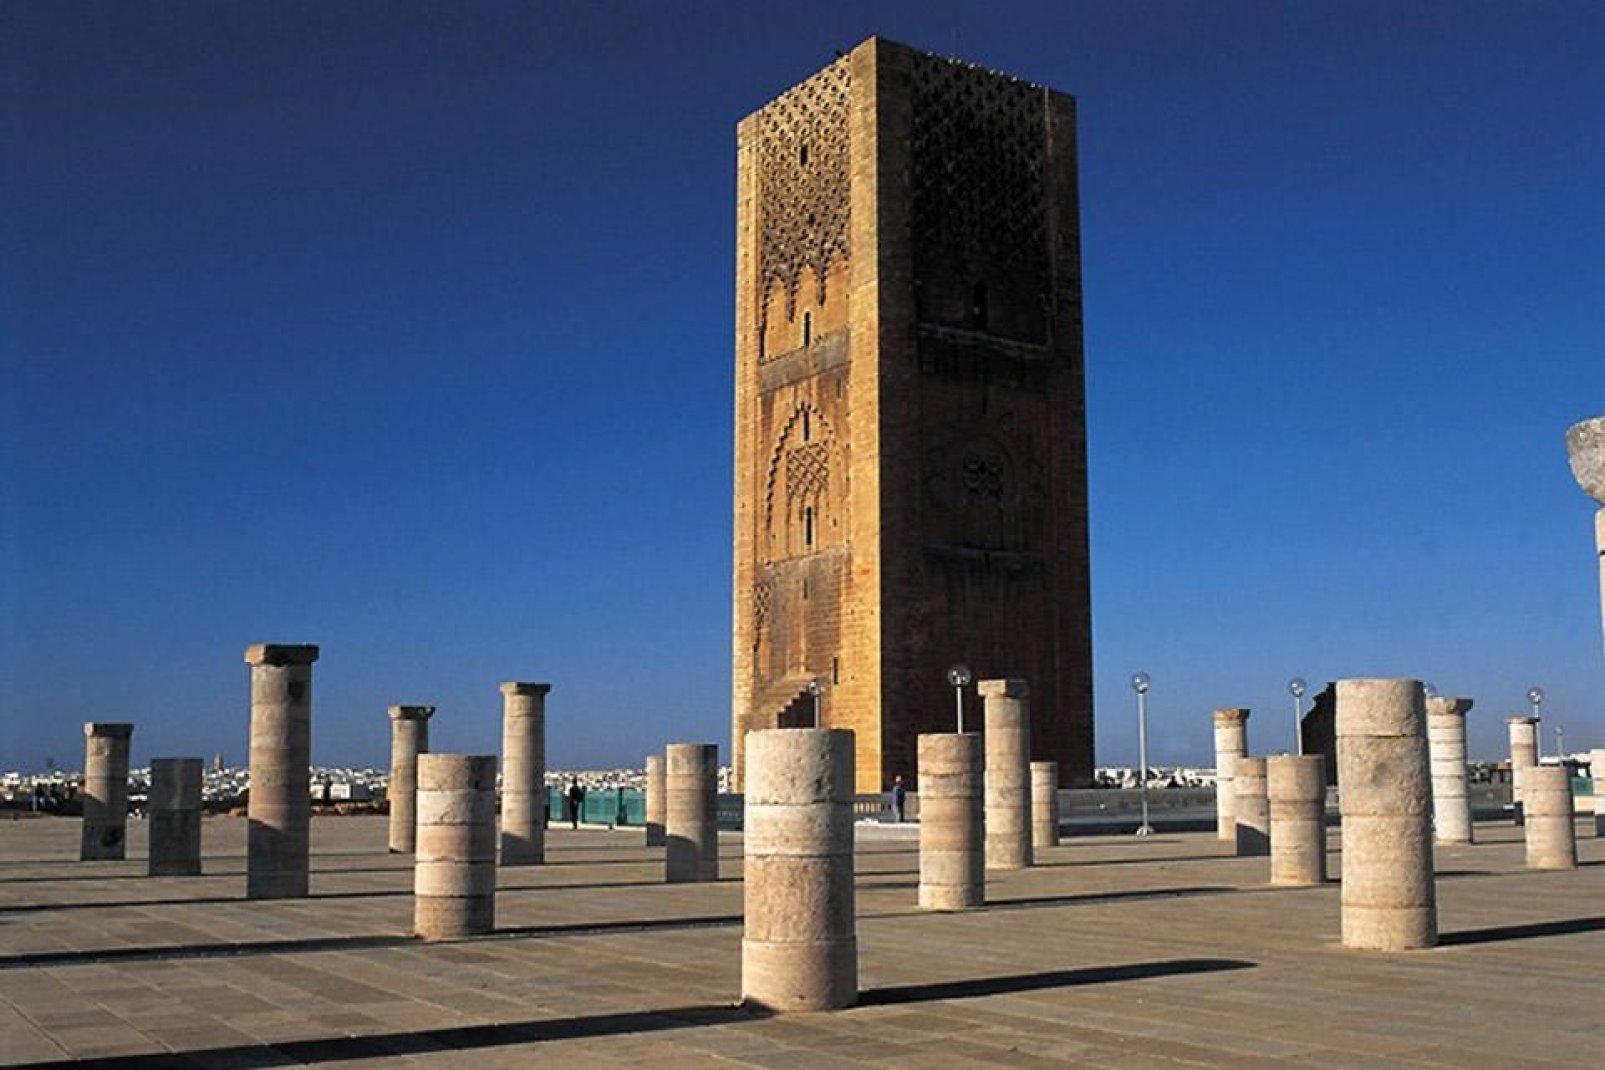 La torre Hassan es el monumento emblemático de Rabat. Aquí pensaba construirse la mezquita más grande del mundo pero se quedó sin acabar